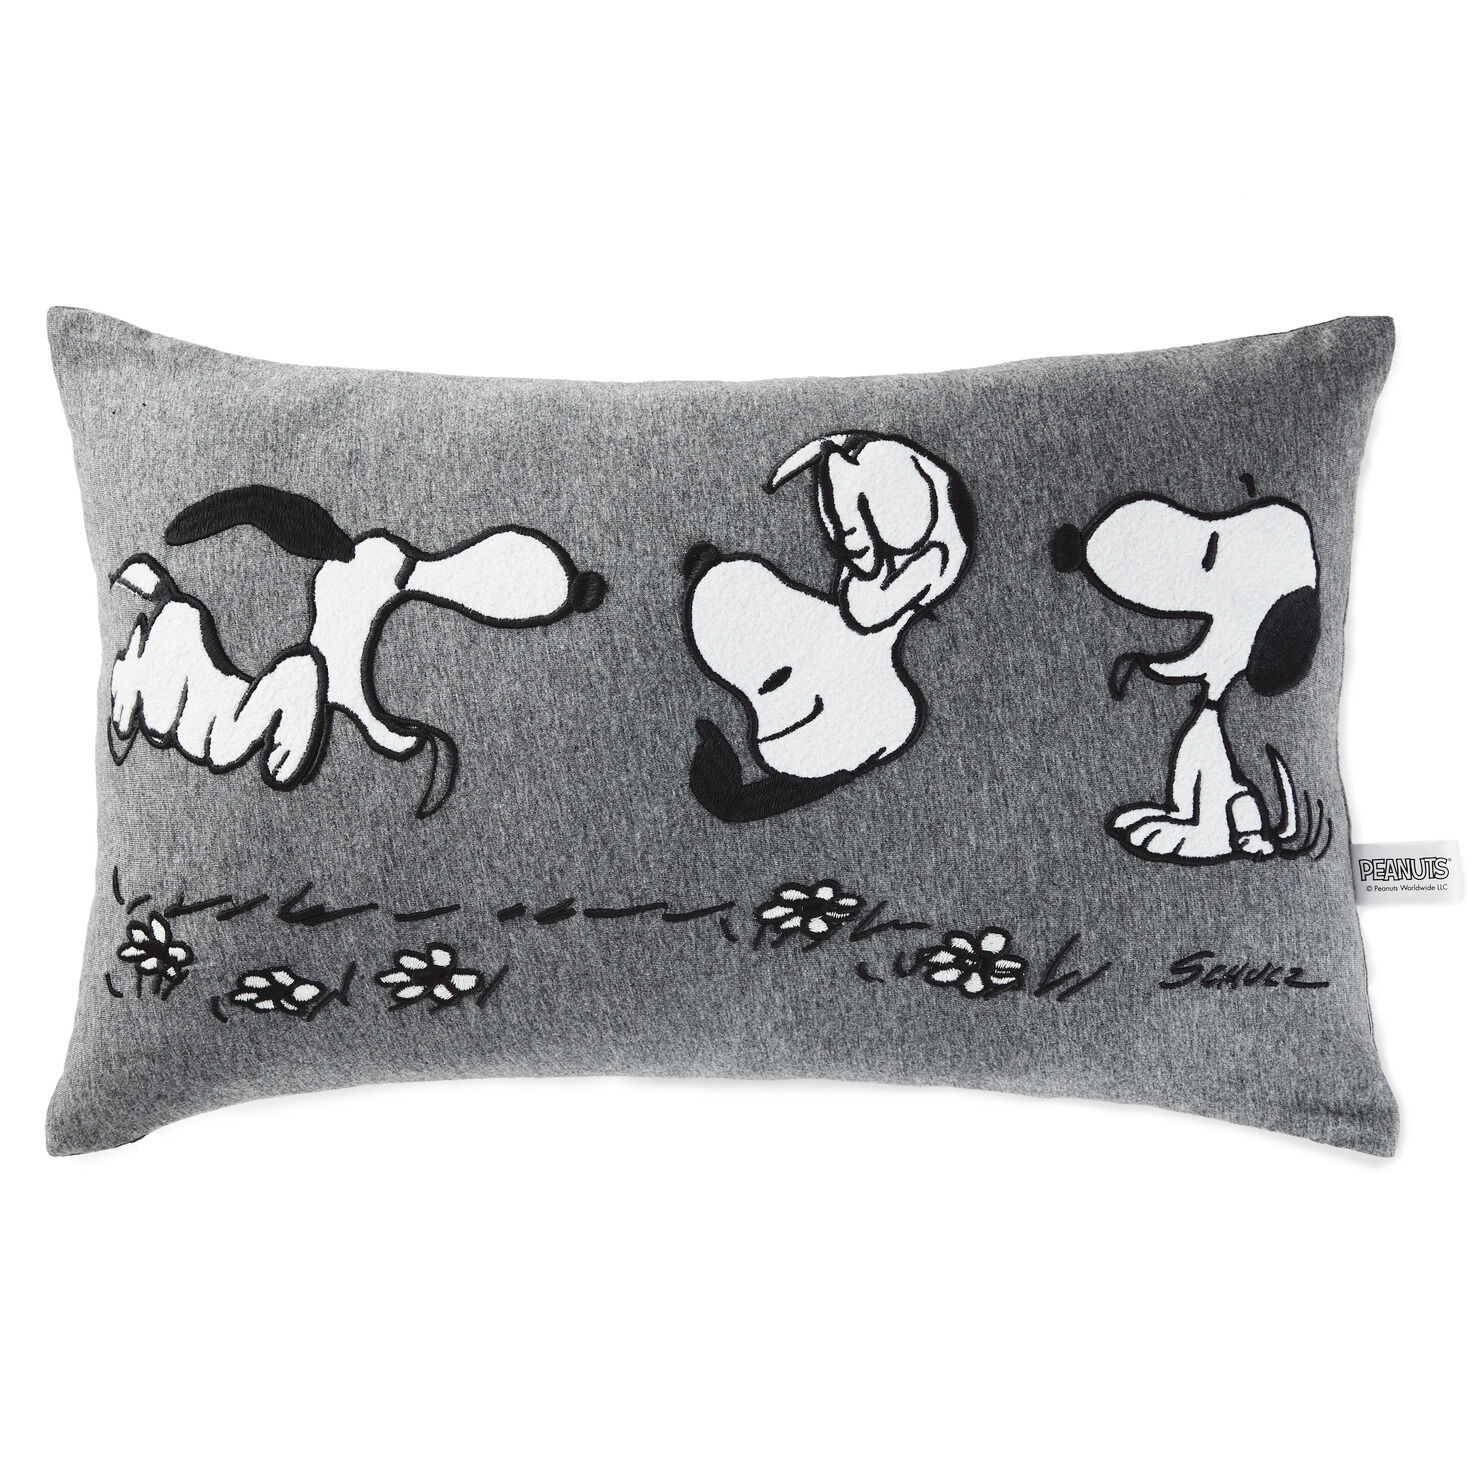 Peanuts® Snoopy Lumbar Throw Pillow 